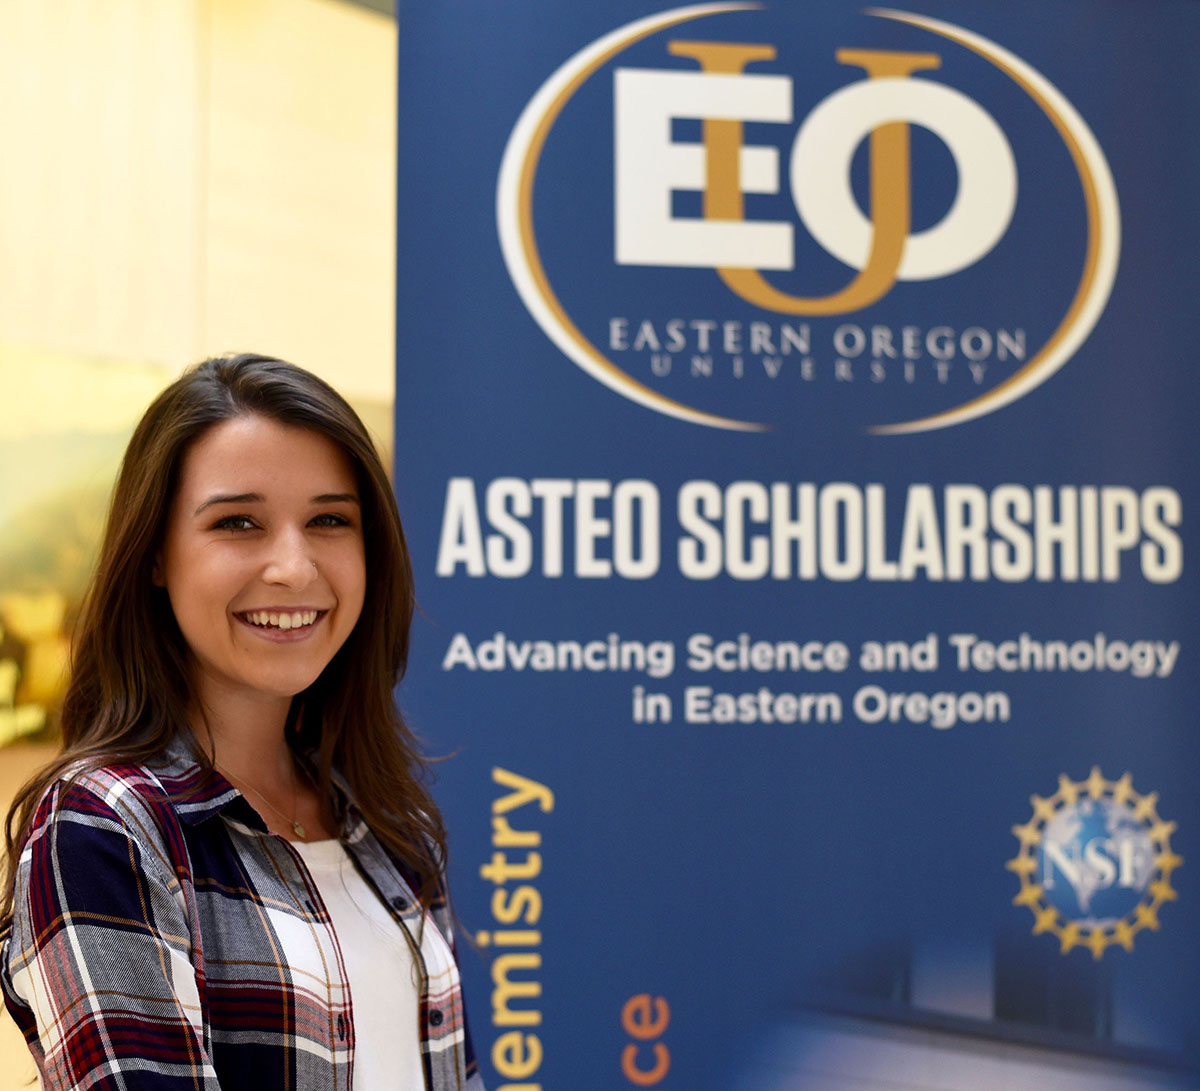 ASTEO Scholar Justine Oswalt